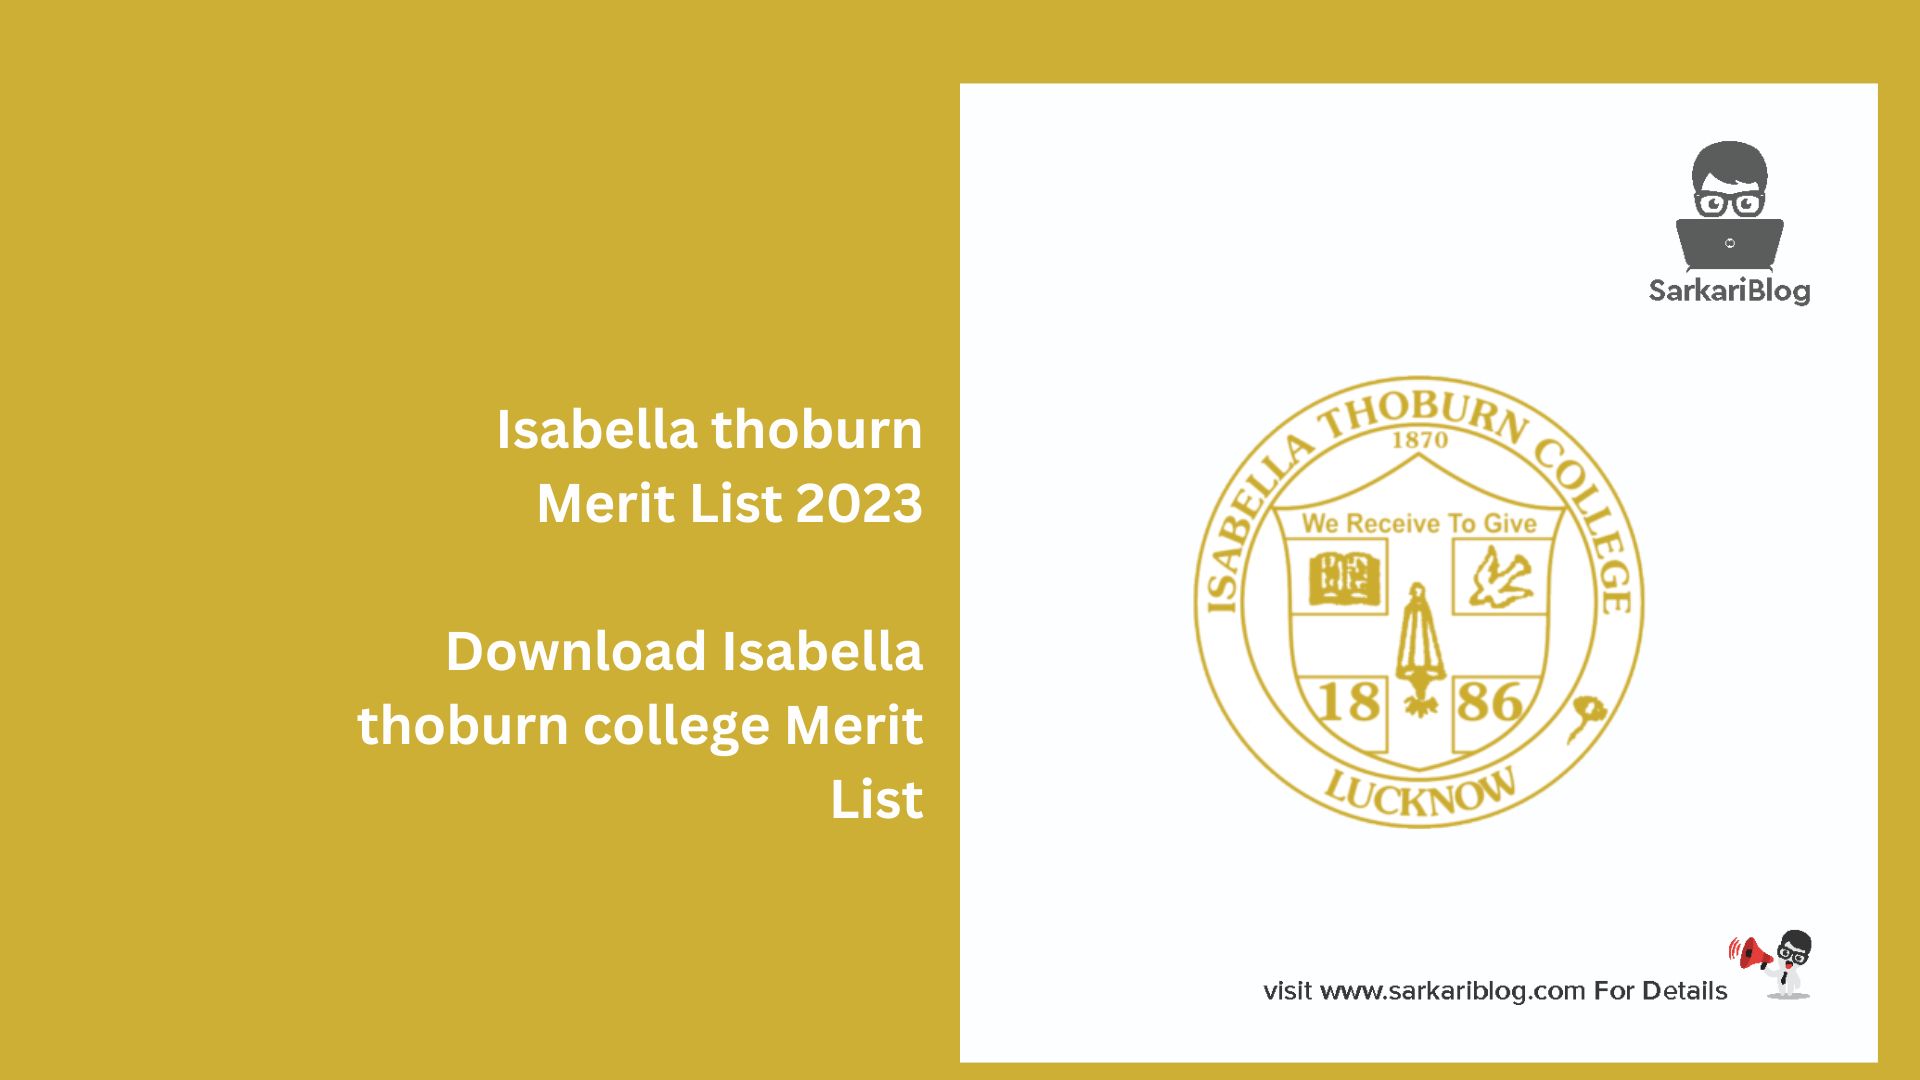 Isabella thoburn Merit List 2023